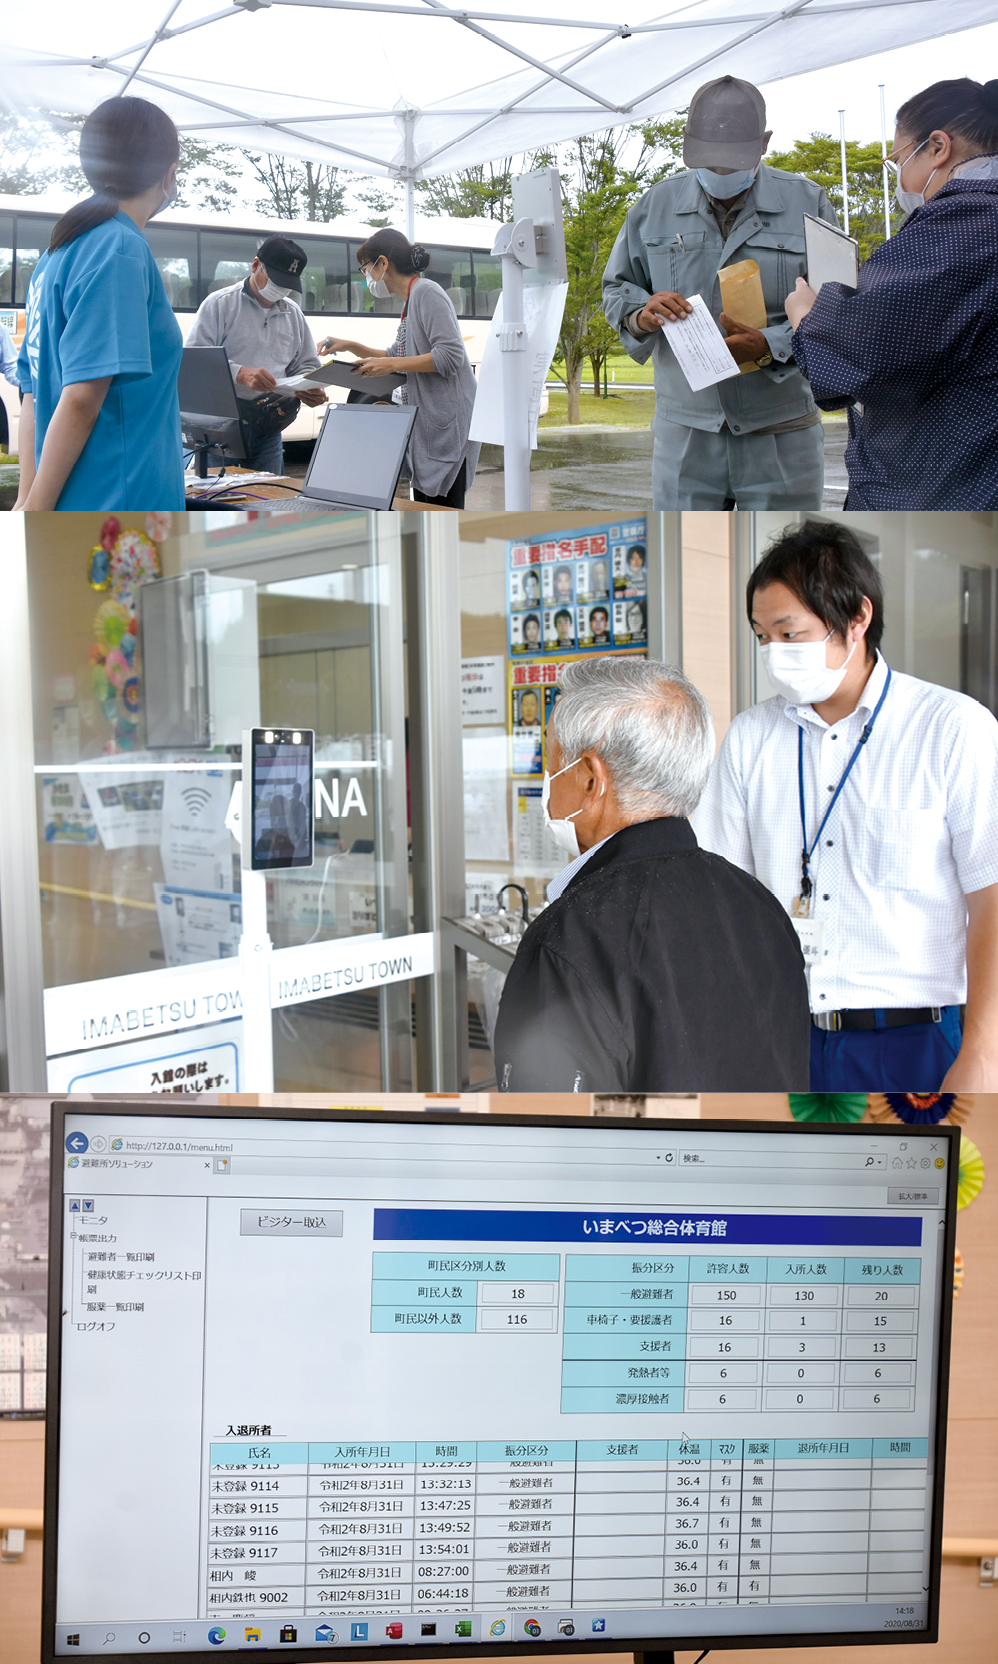 青森県今別町で実施された感染症流行下での避難所運営訓練の様子。AIを搭載した非接触検温器で検温とともに顔認識を行い、町民情報と照合する方法も検証した（今別町提供）